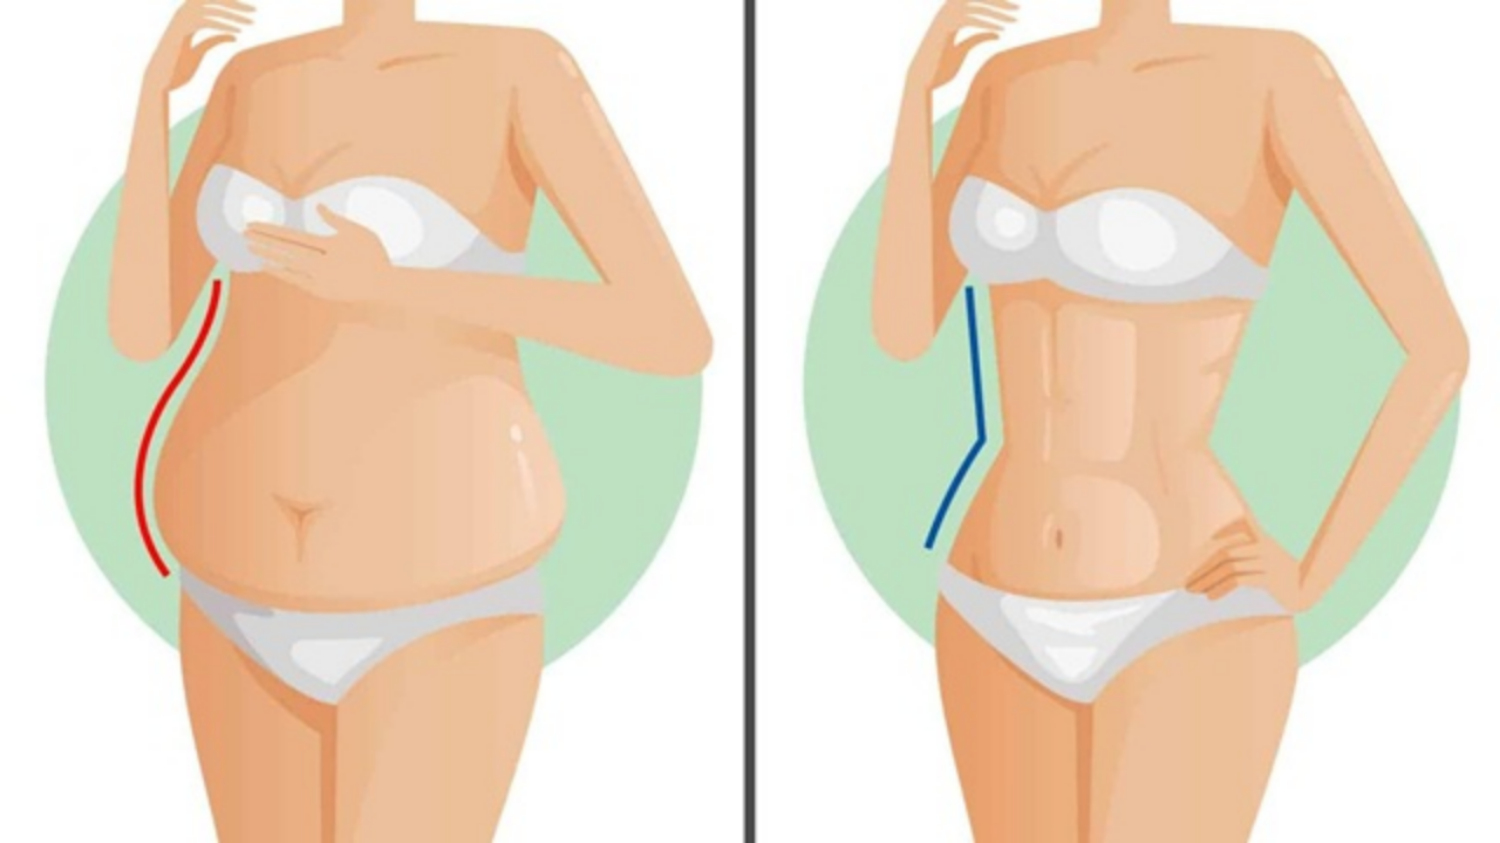 20 cách giảm mỡ bụng hiệu quả đã được khoa học chứng minh